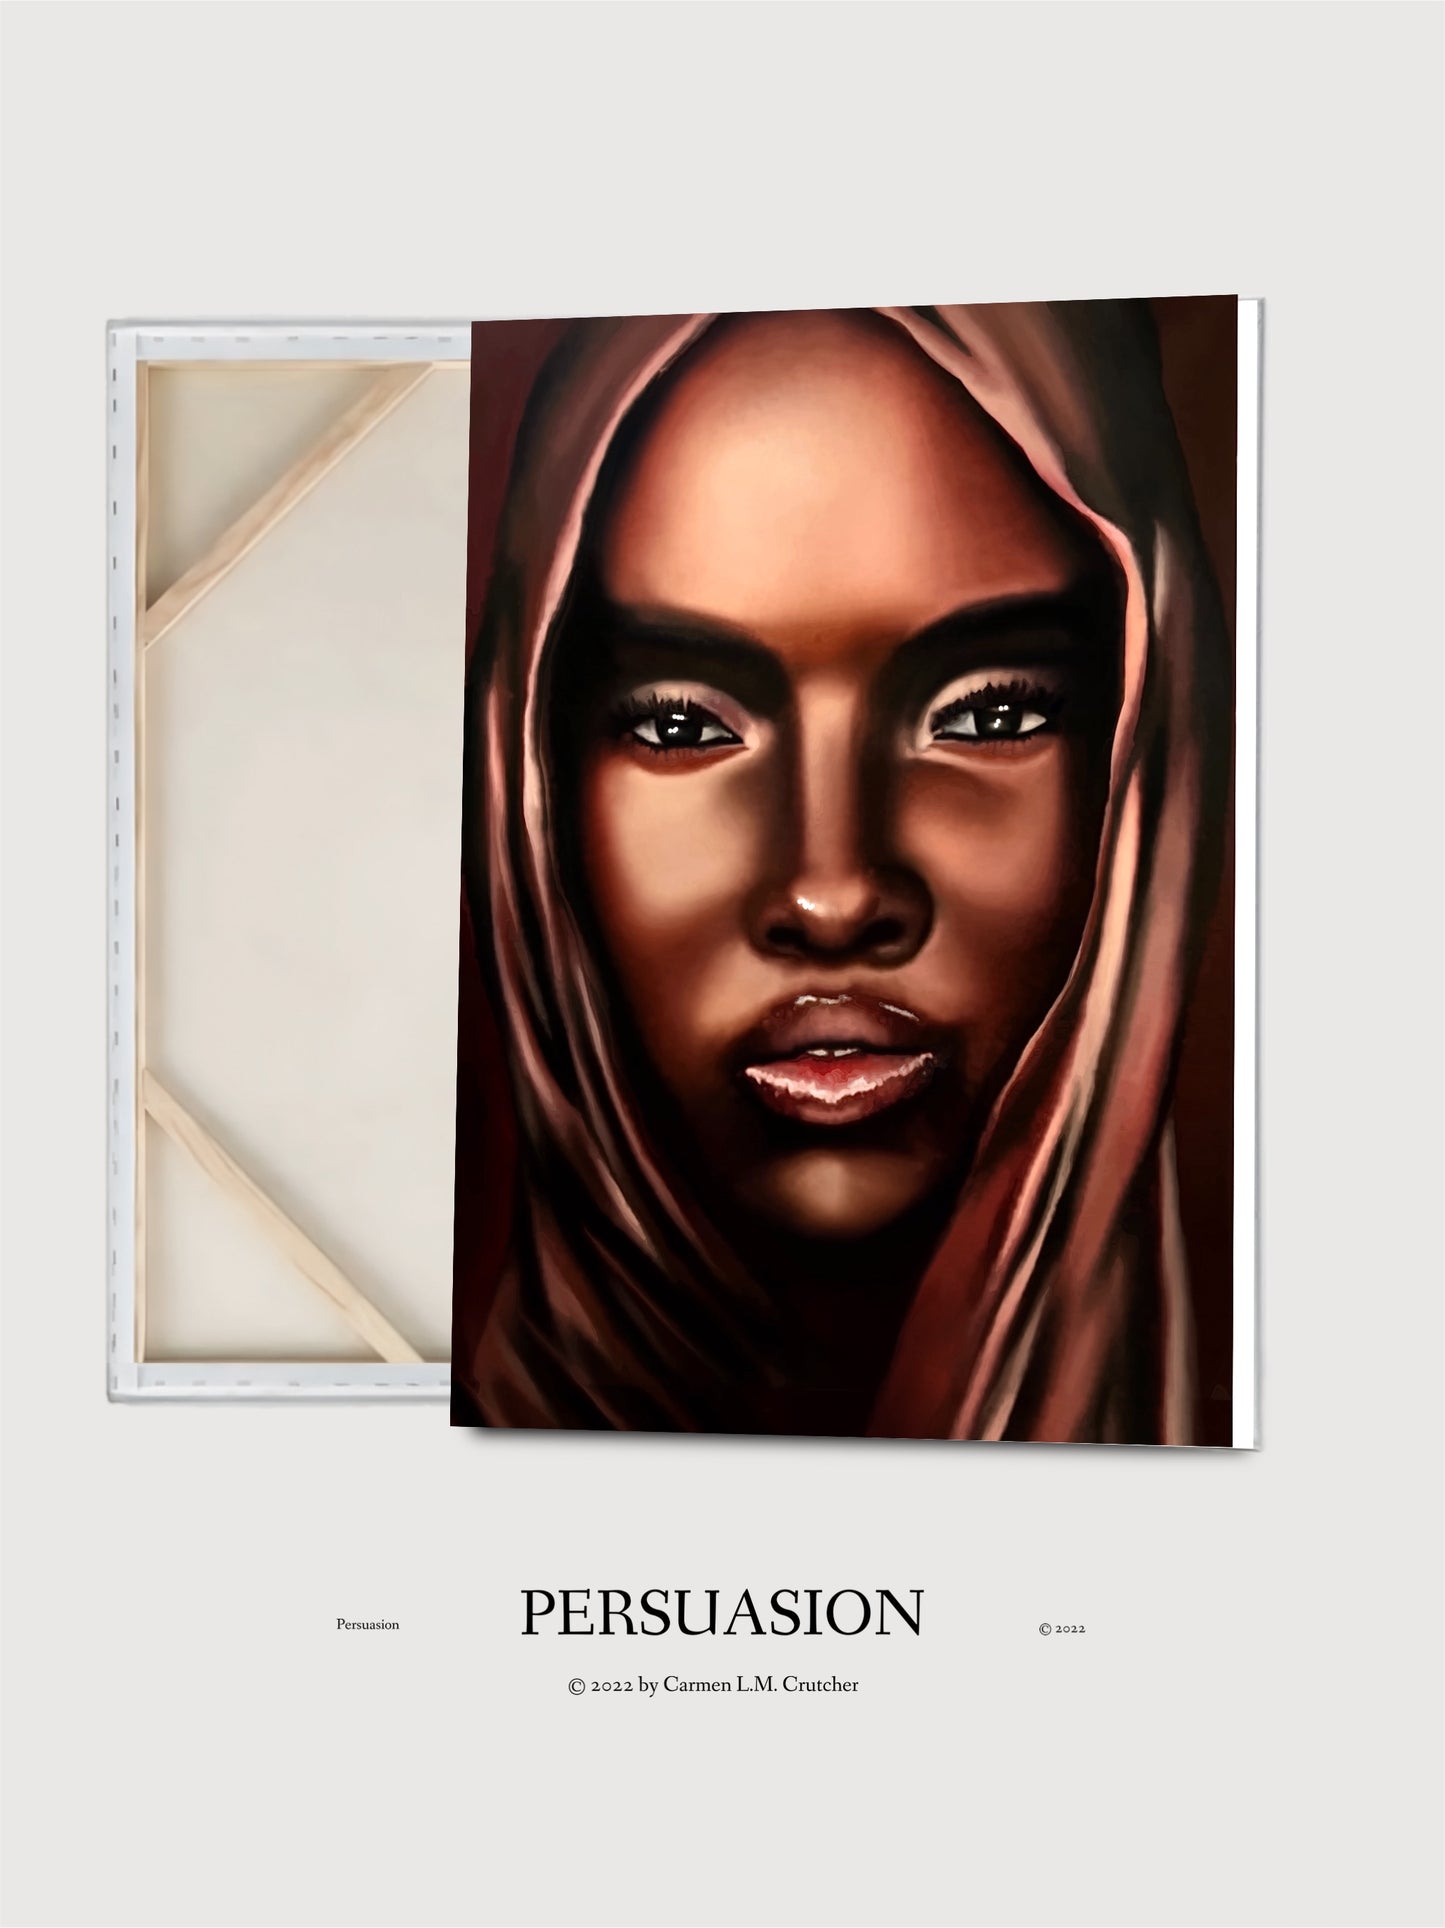 “Persuasion”